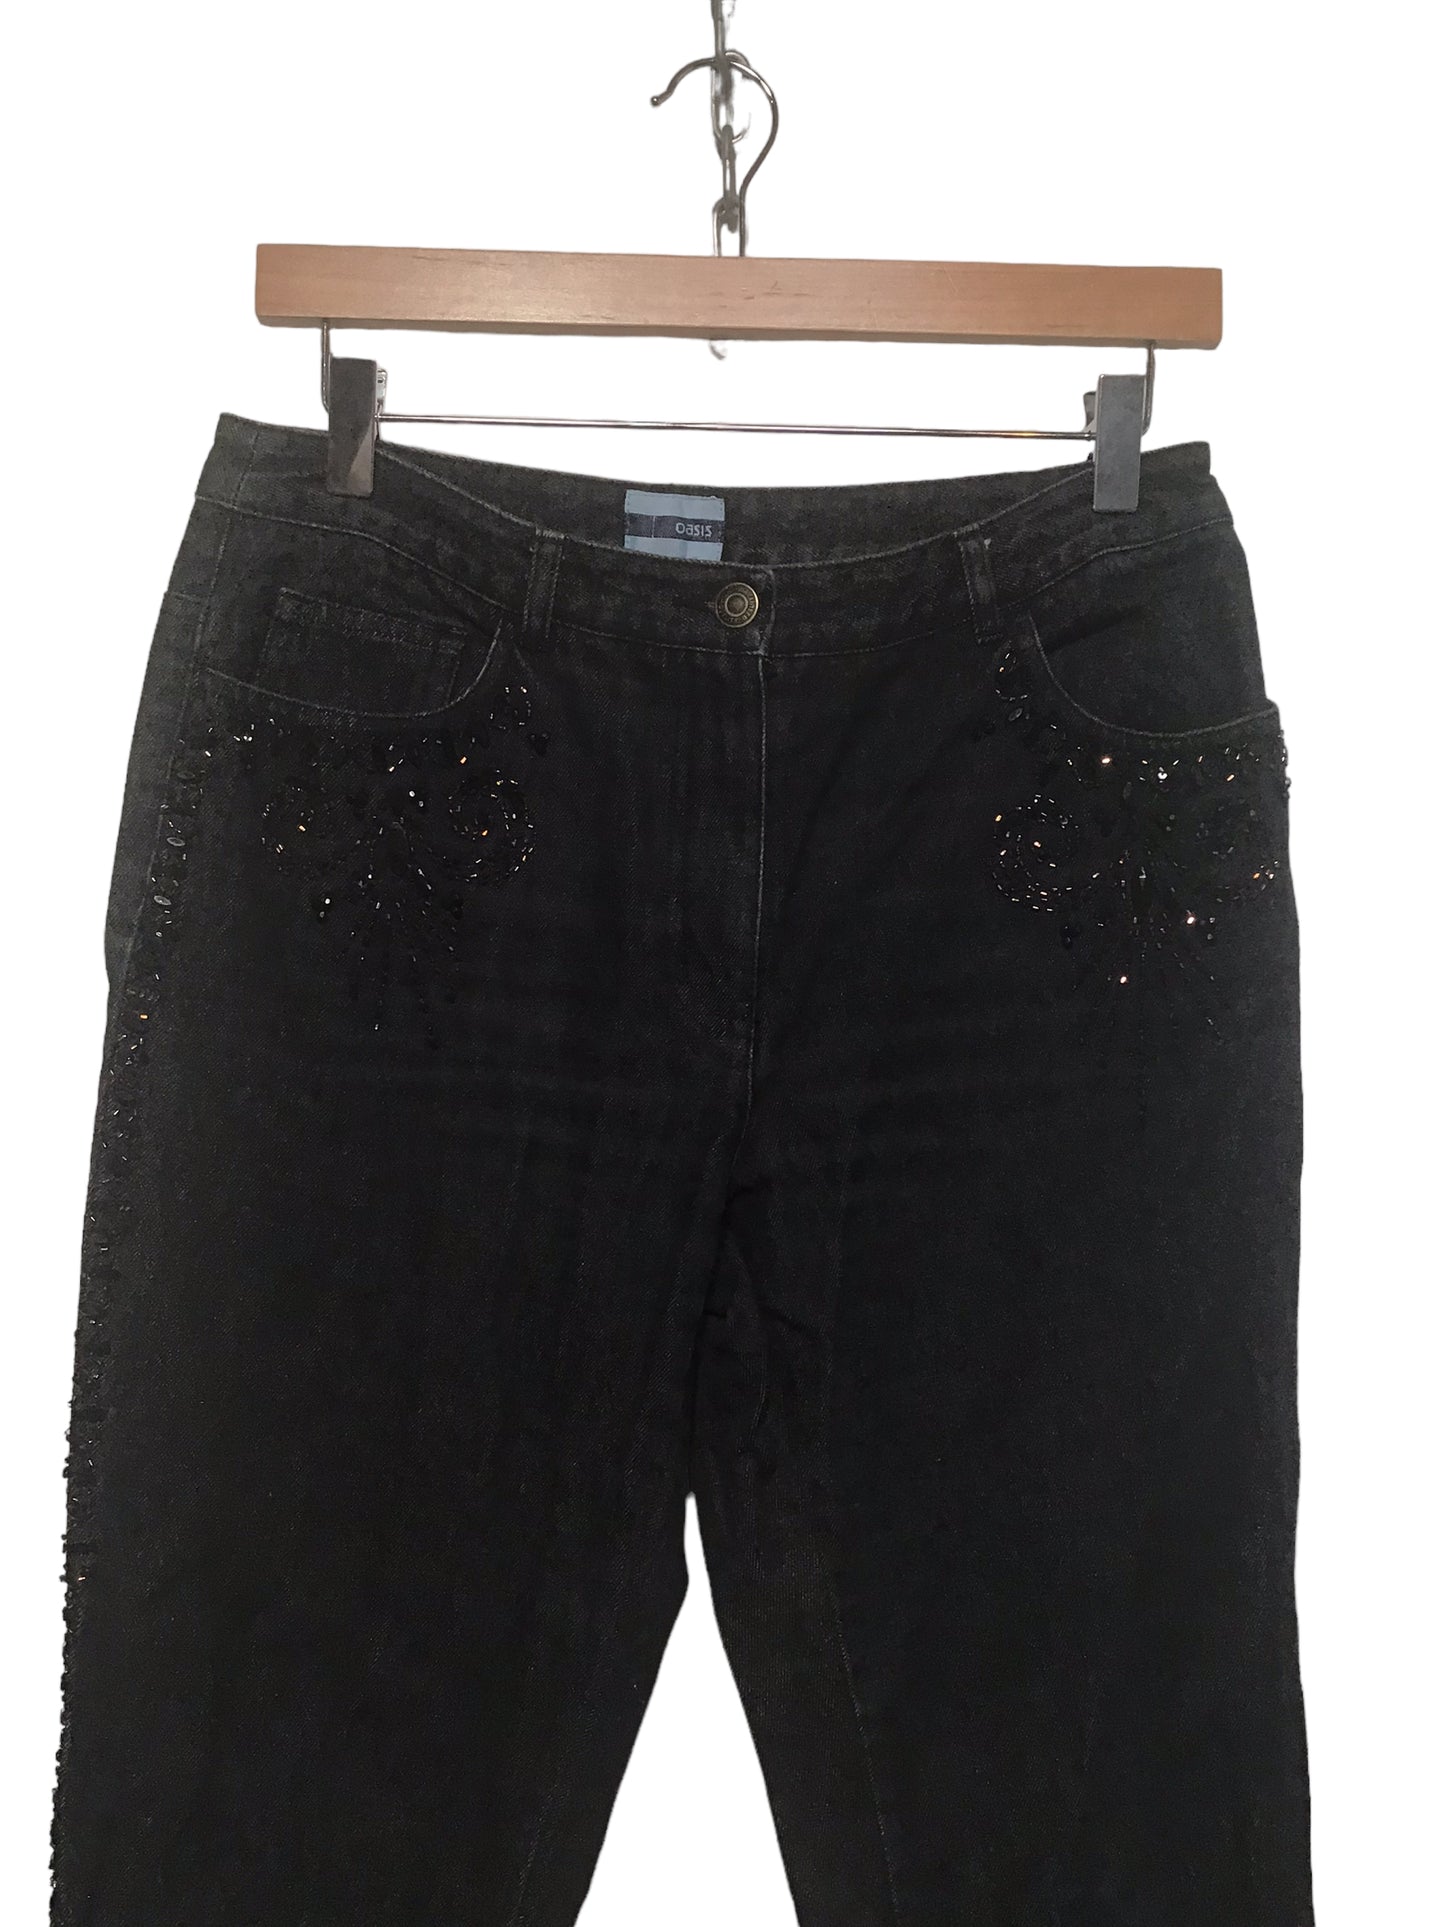 Black Lacoste Denim Jeans (Size 34x33)